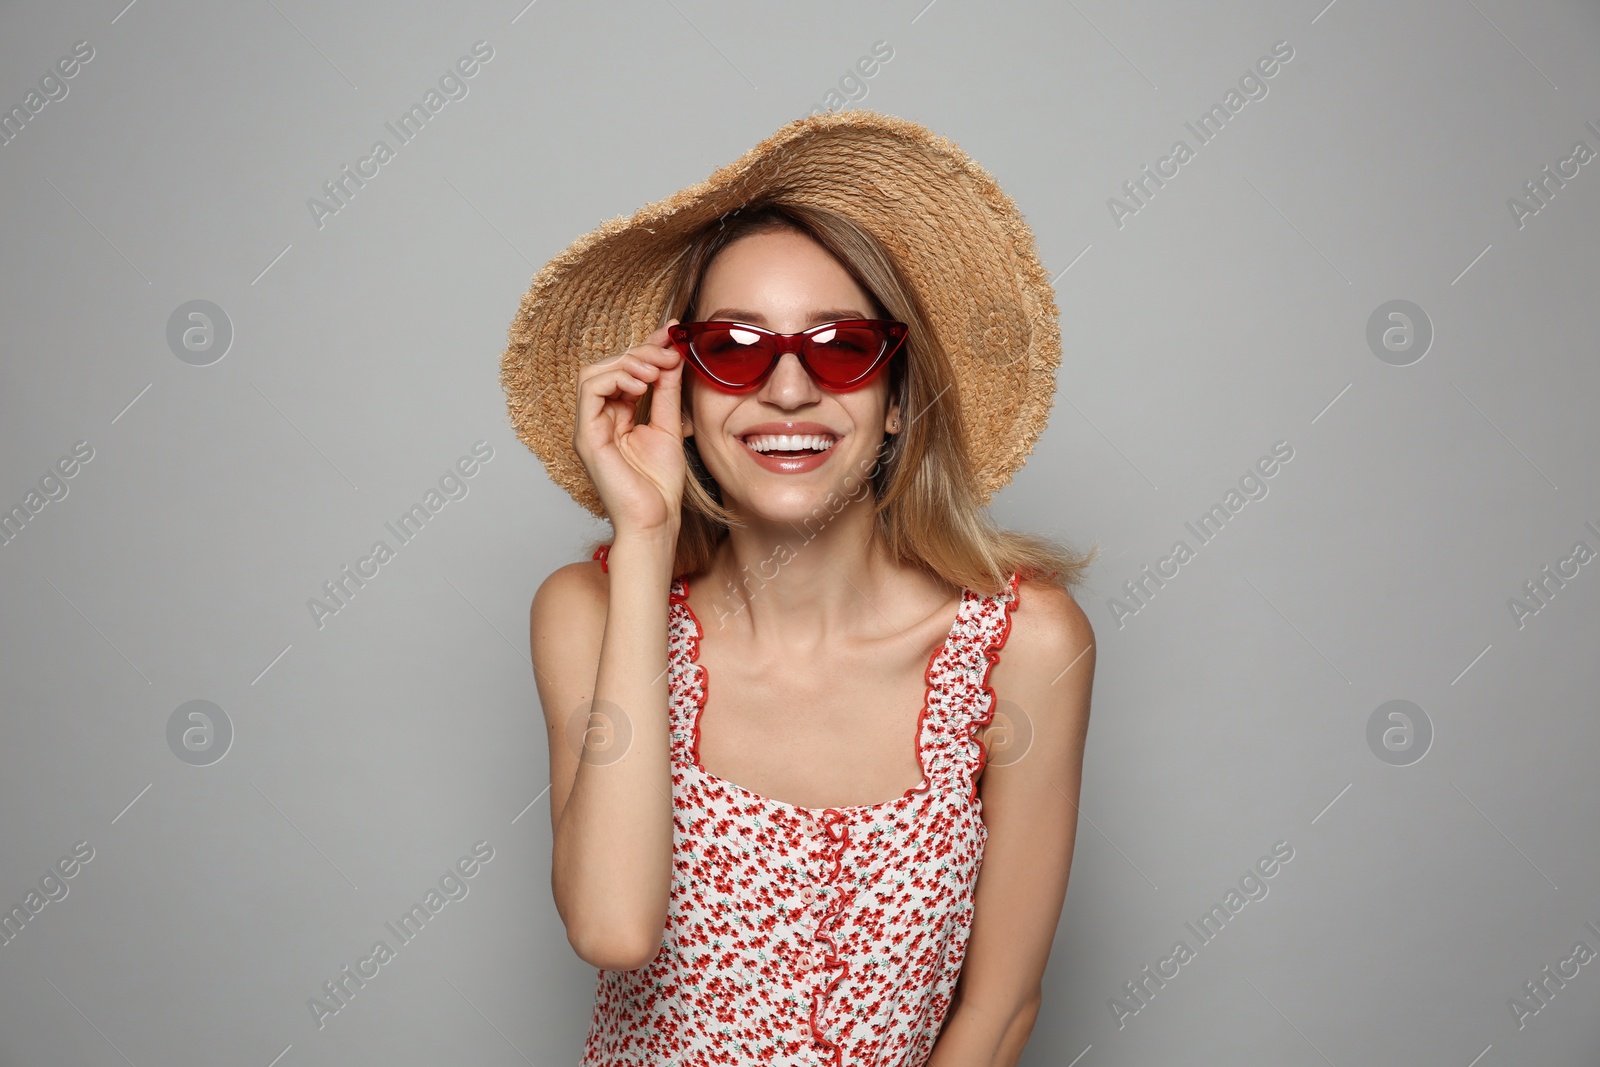 Photo of Beautiful young woman wearing straw hat and sunglasses on light grey background. Stylish headdress